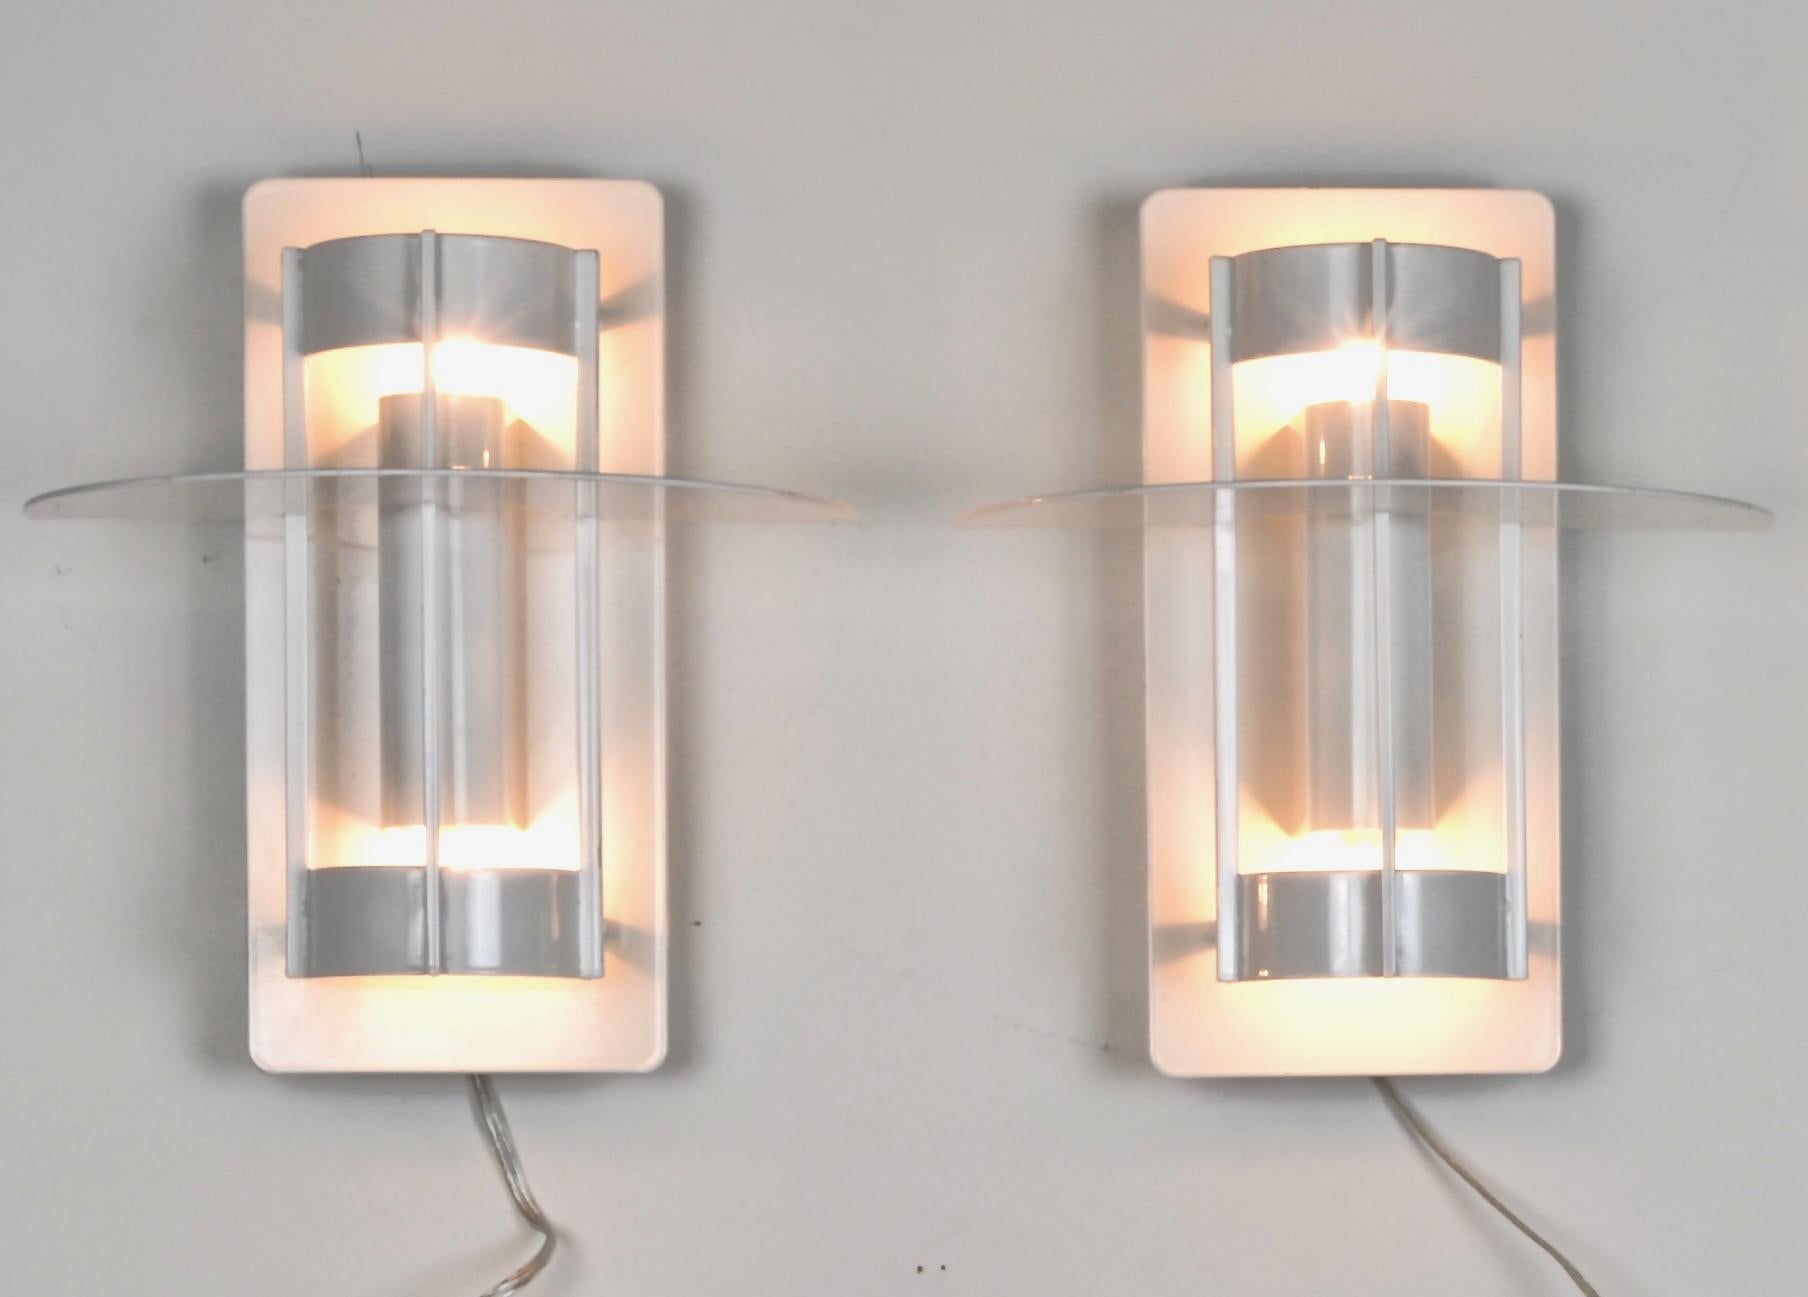 Une paire d'appliques classiques modernes conçues par Louis Poulsen. Chacun d'entre eux a été nouvellement câblé, remplaçant les luminaires fluorescents d'origine par des lampes à incandescence. Ampoules simples orientées vers le haut et le bas. Des